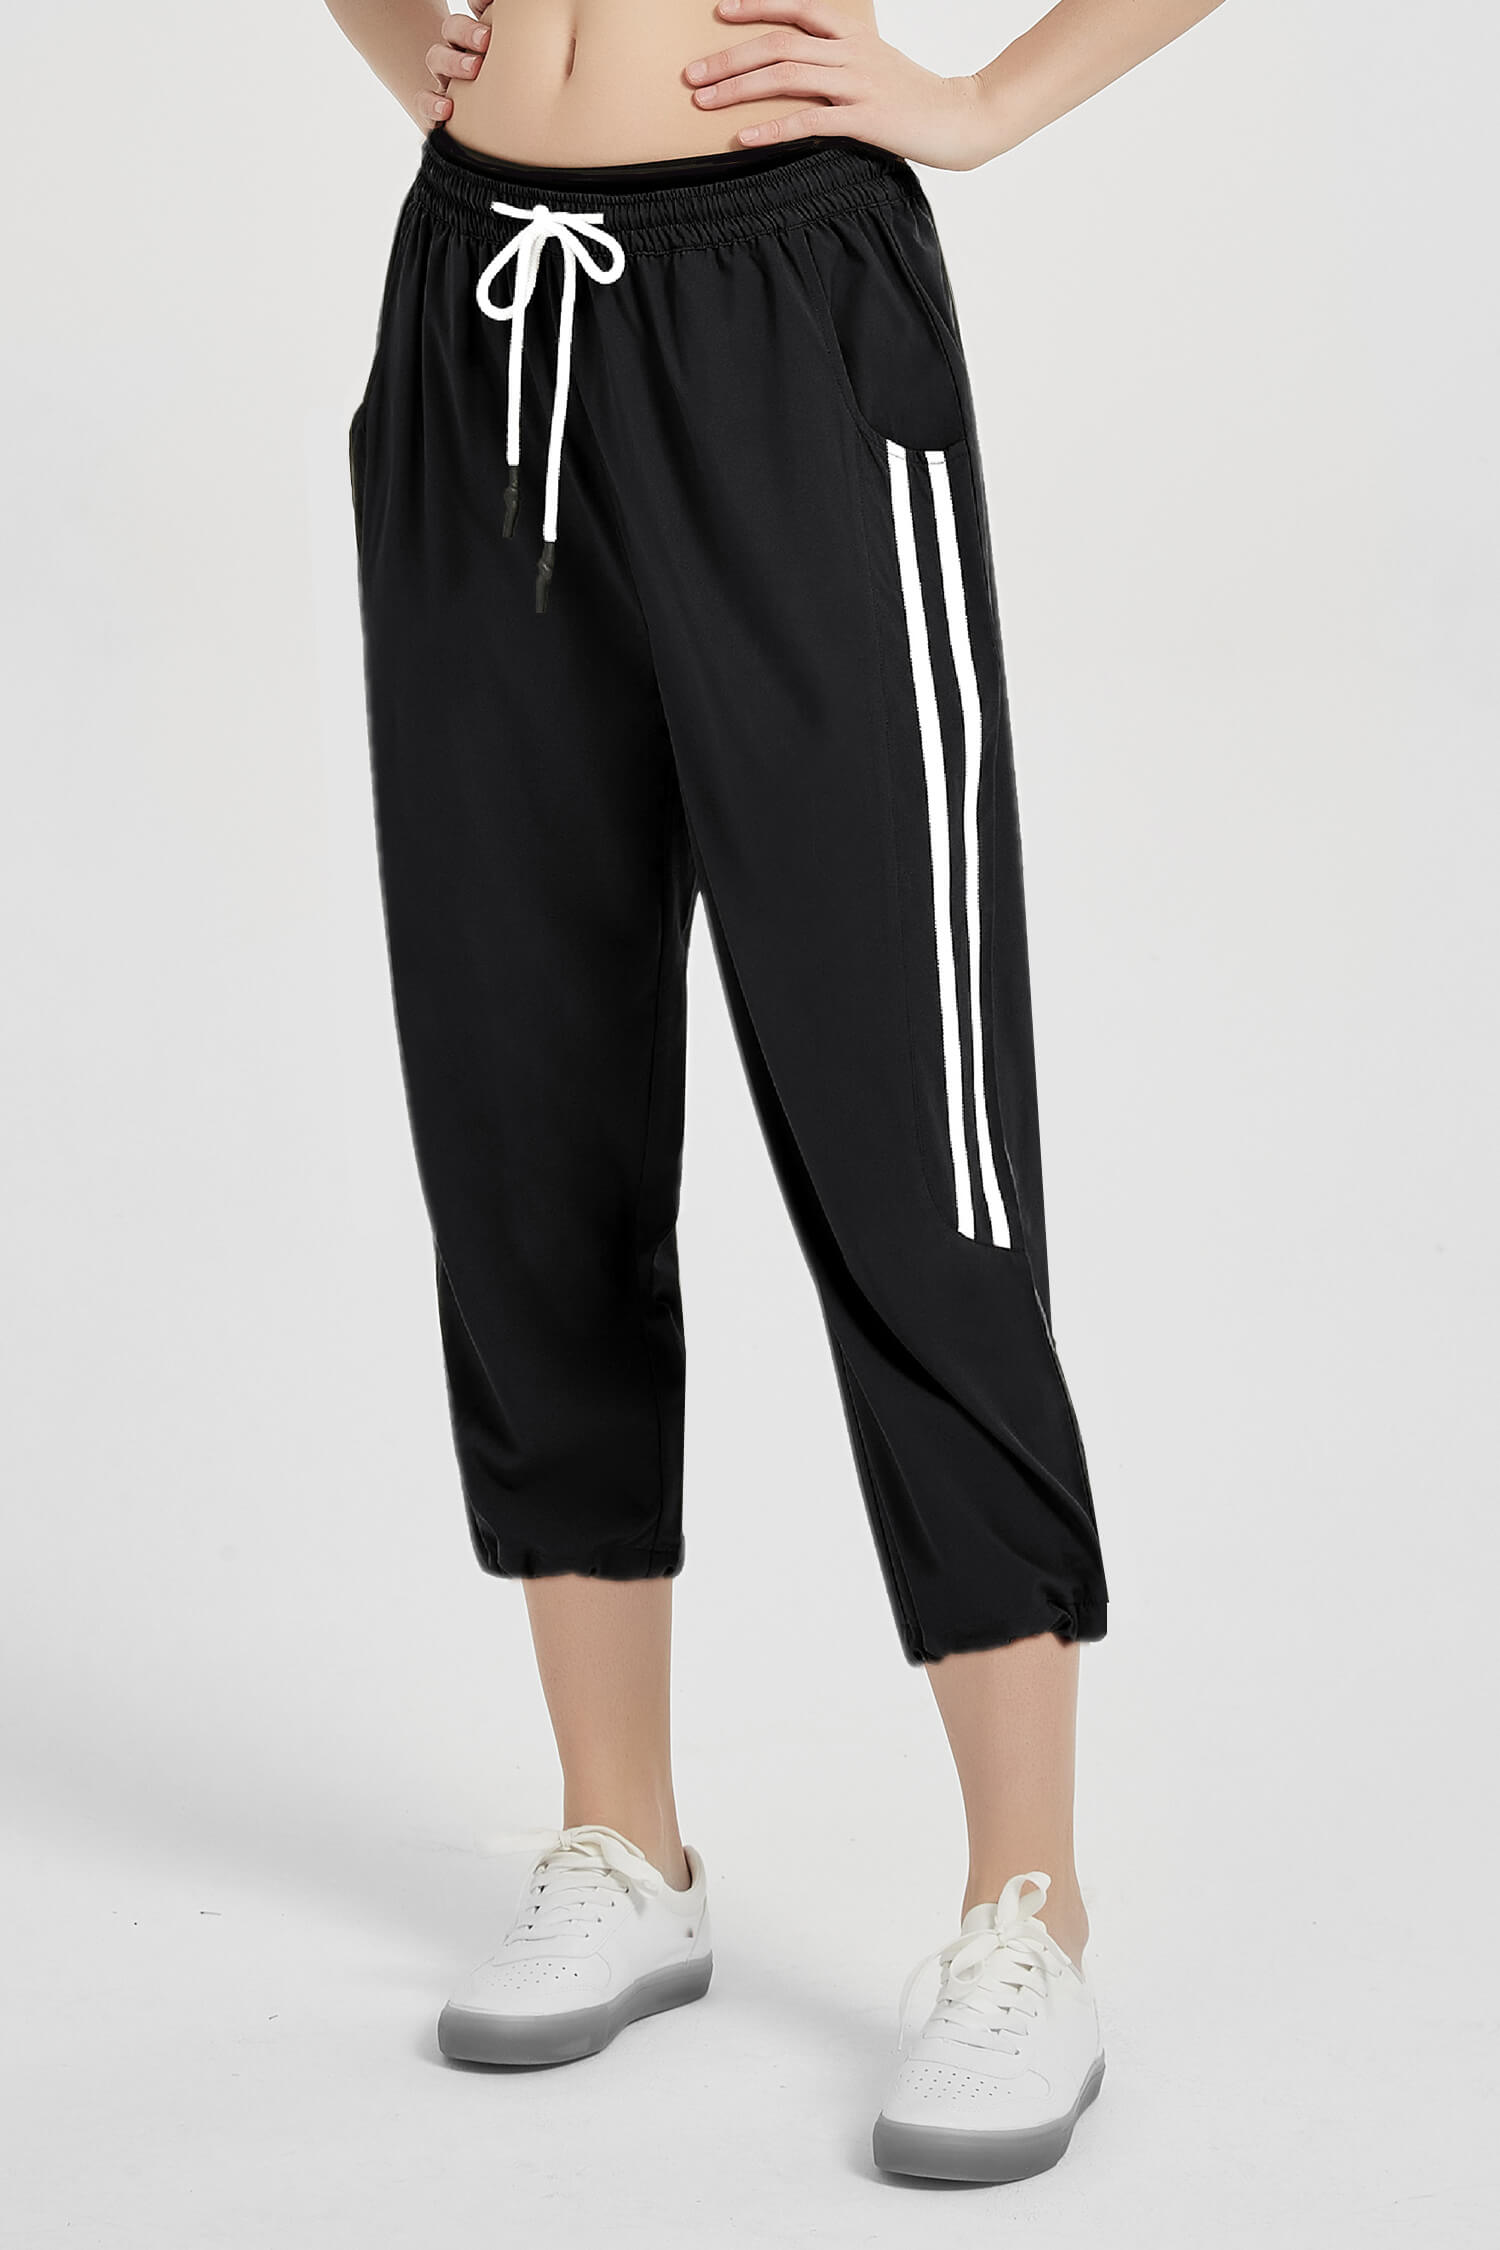 Adidas Black Capri Pants for Women | Mercari